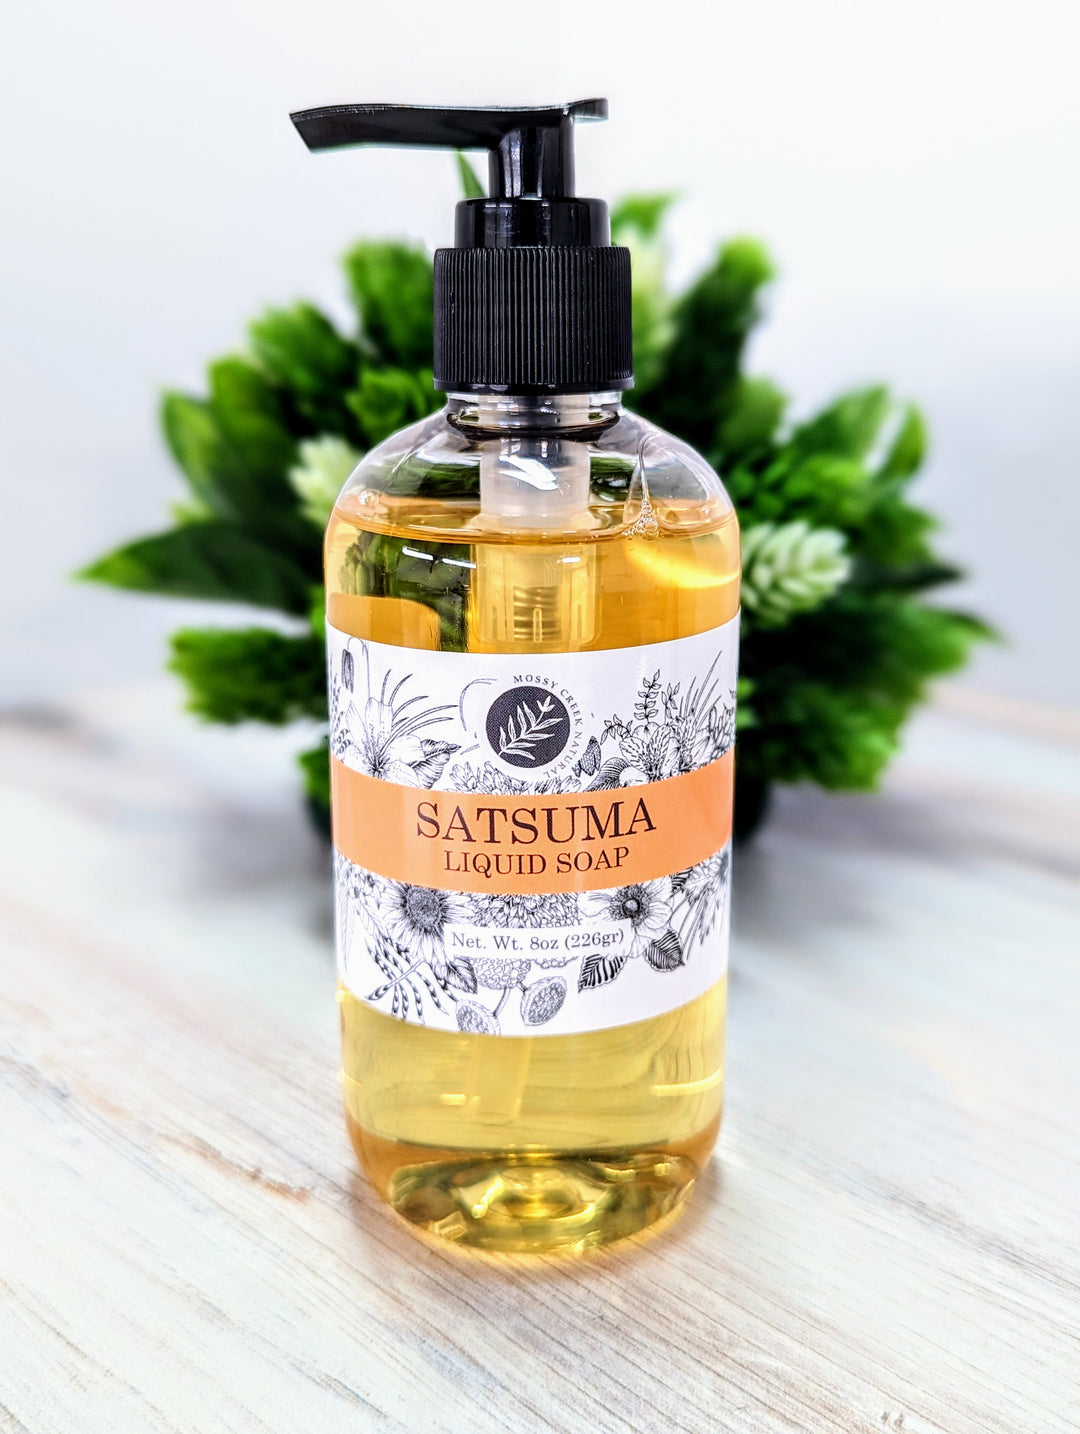 Satsuma Liquid Soap